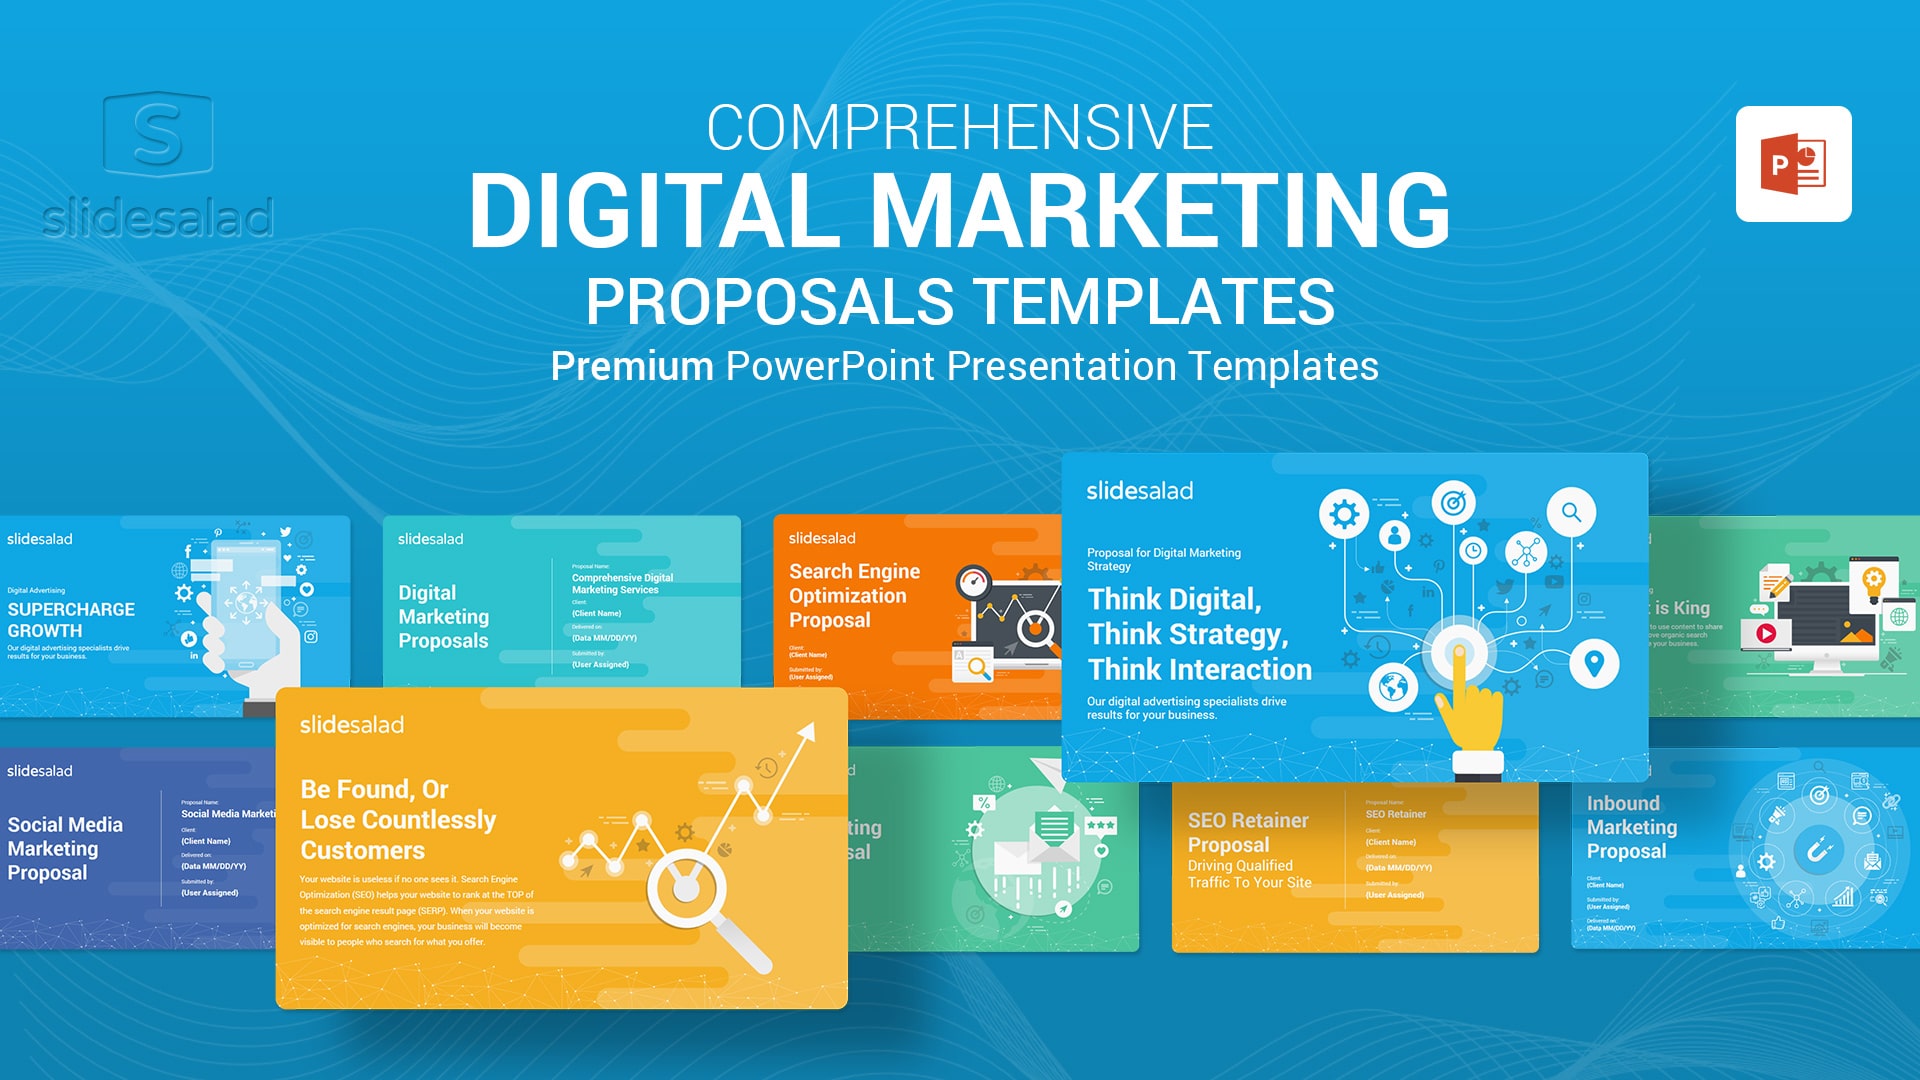 Best Digital Marketing Proposals PowerPoint Templates - Compelling Templates for Digital Marketing Proposals